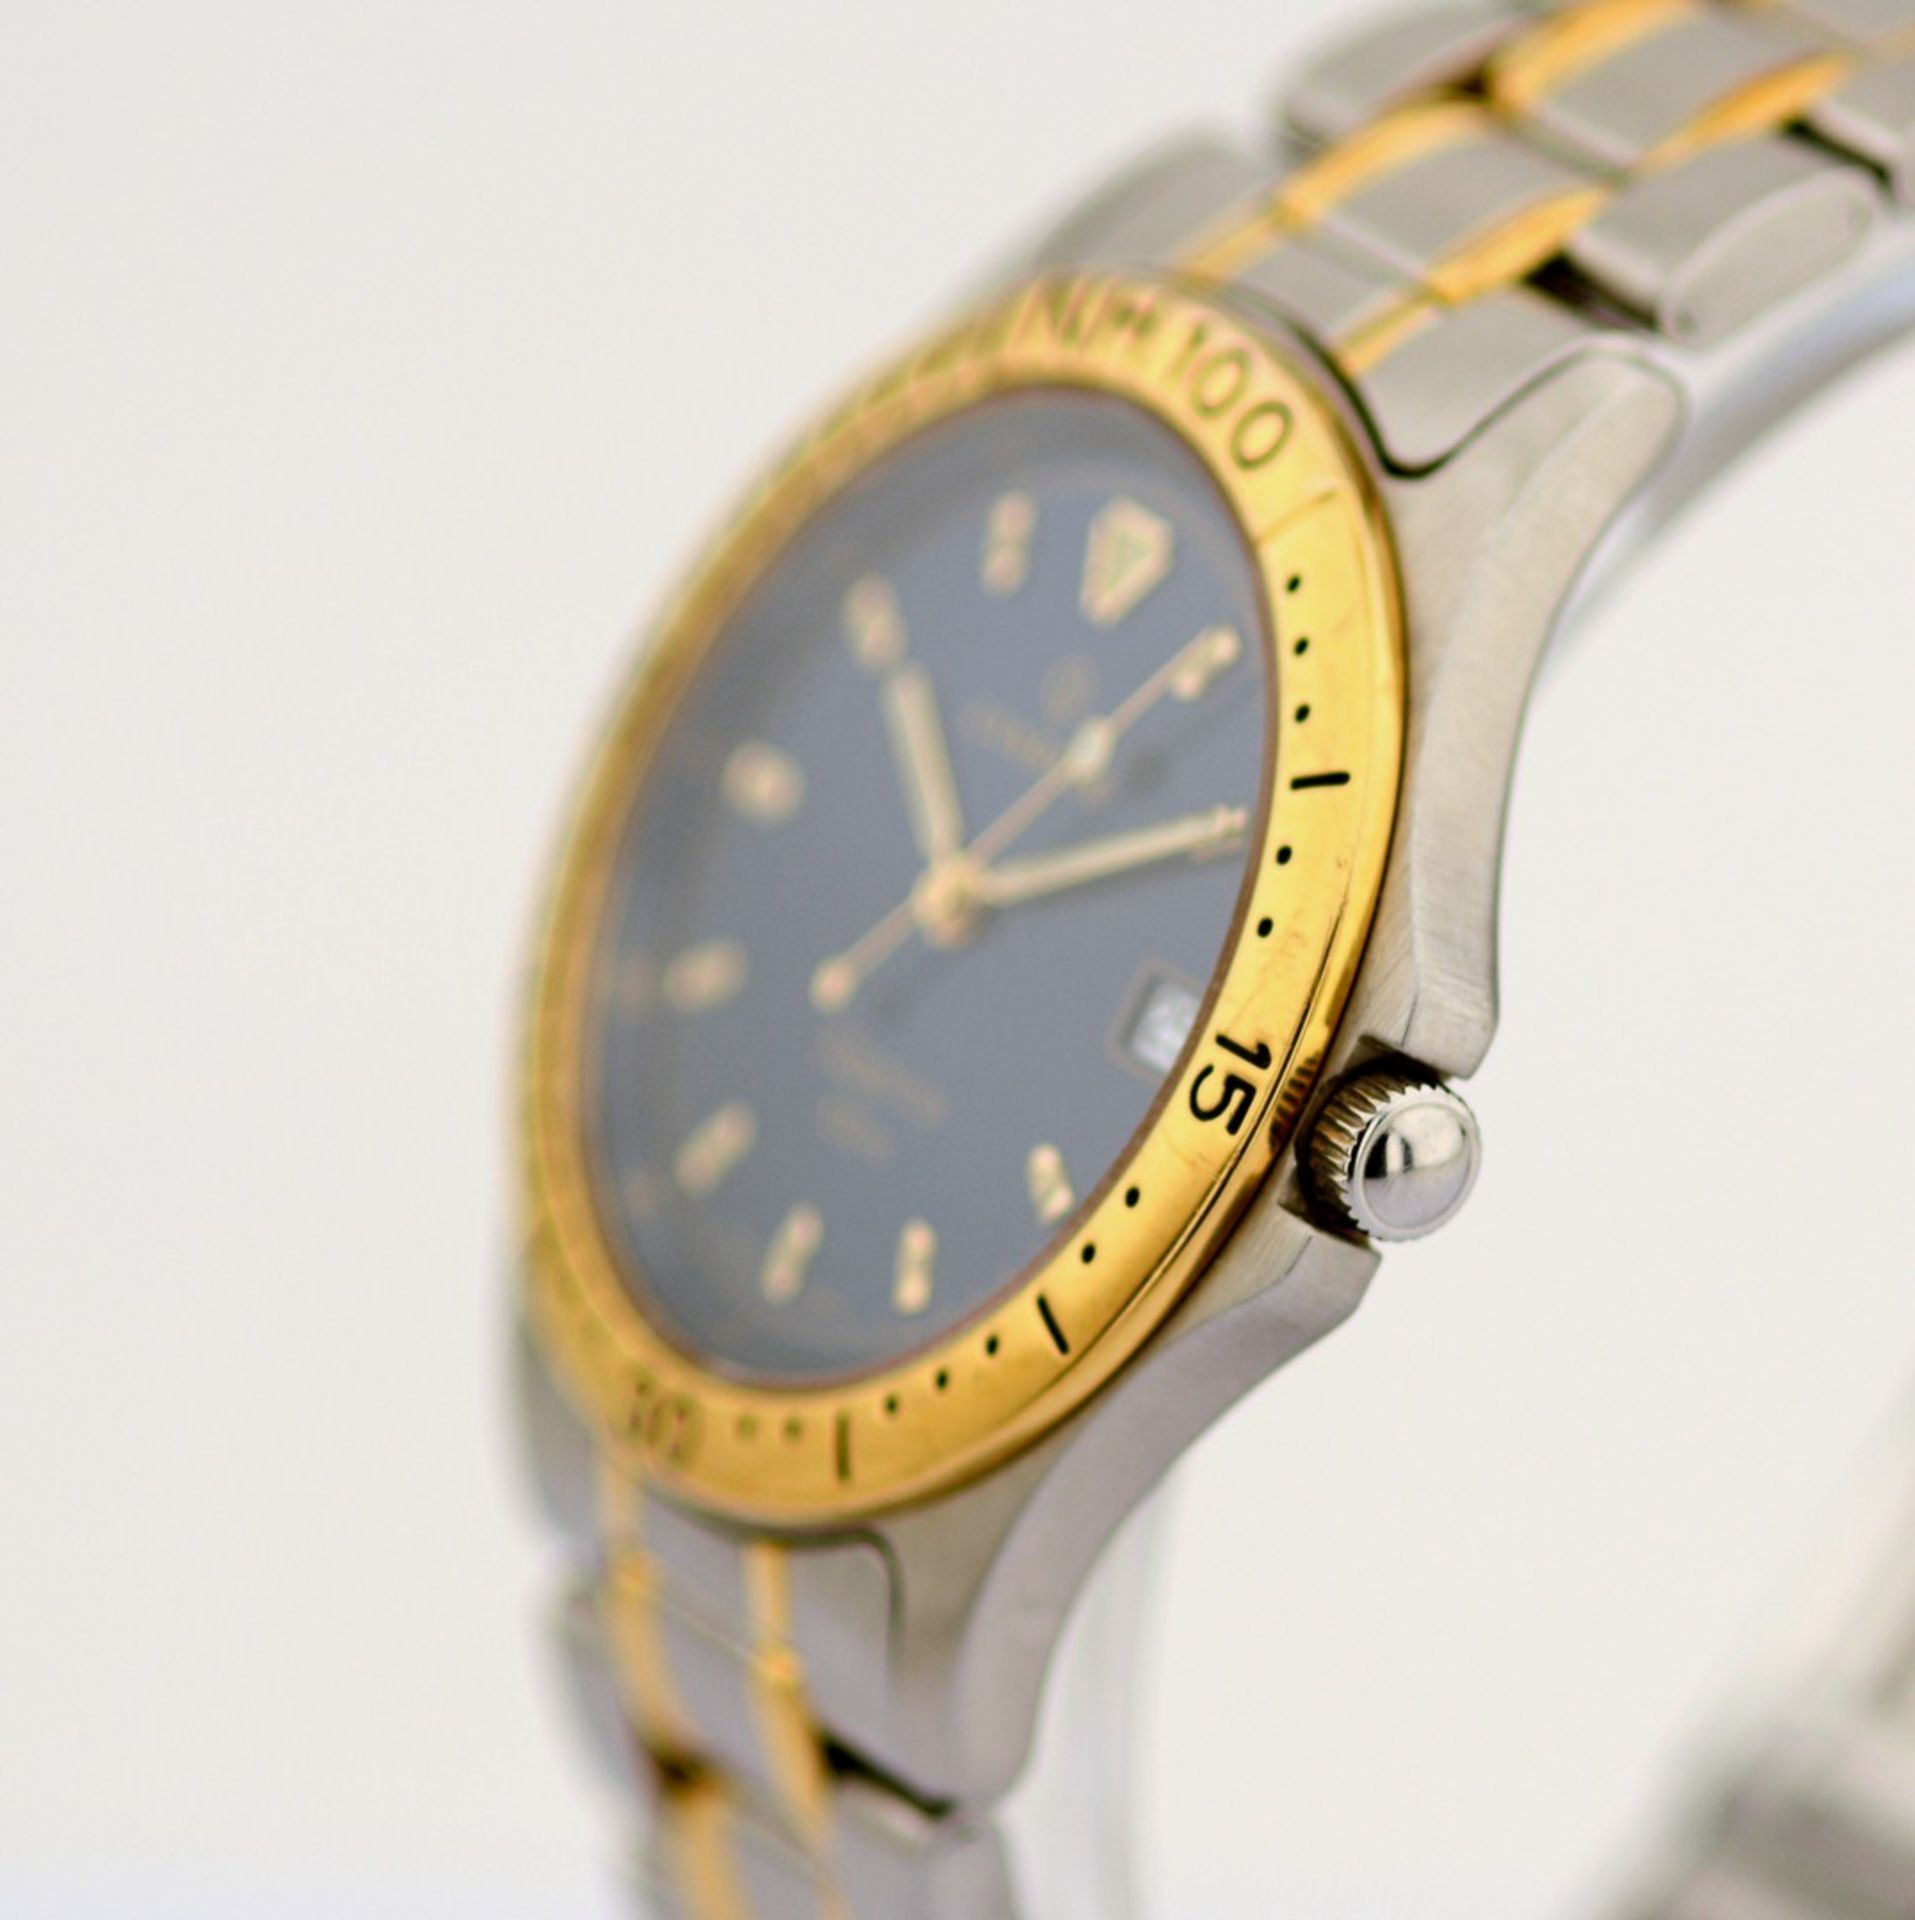 Candino / Sapphire - Date - Gentlemen's Steel Wrist Watch - Image 4 of 7